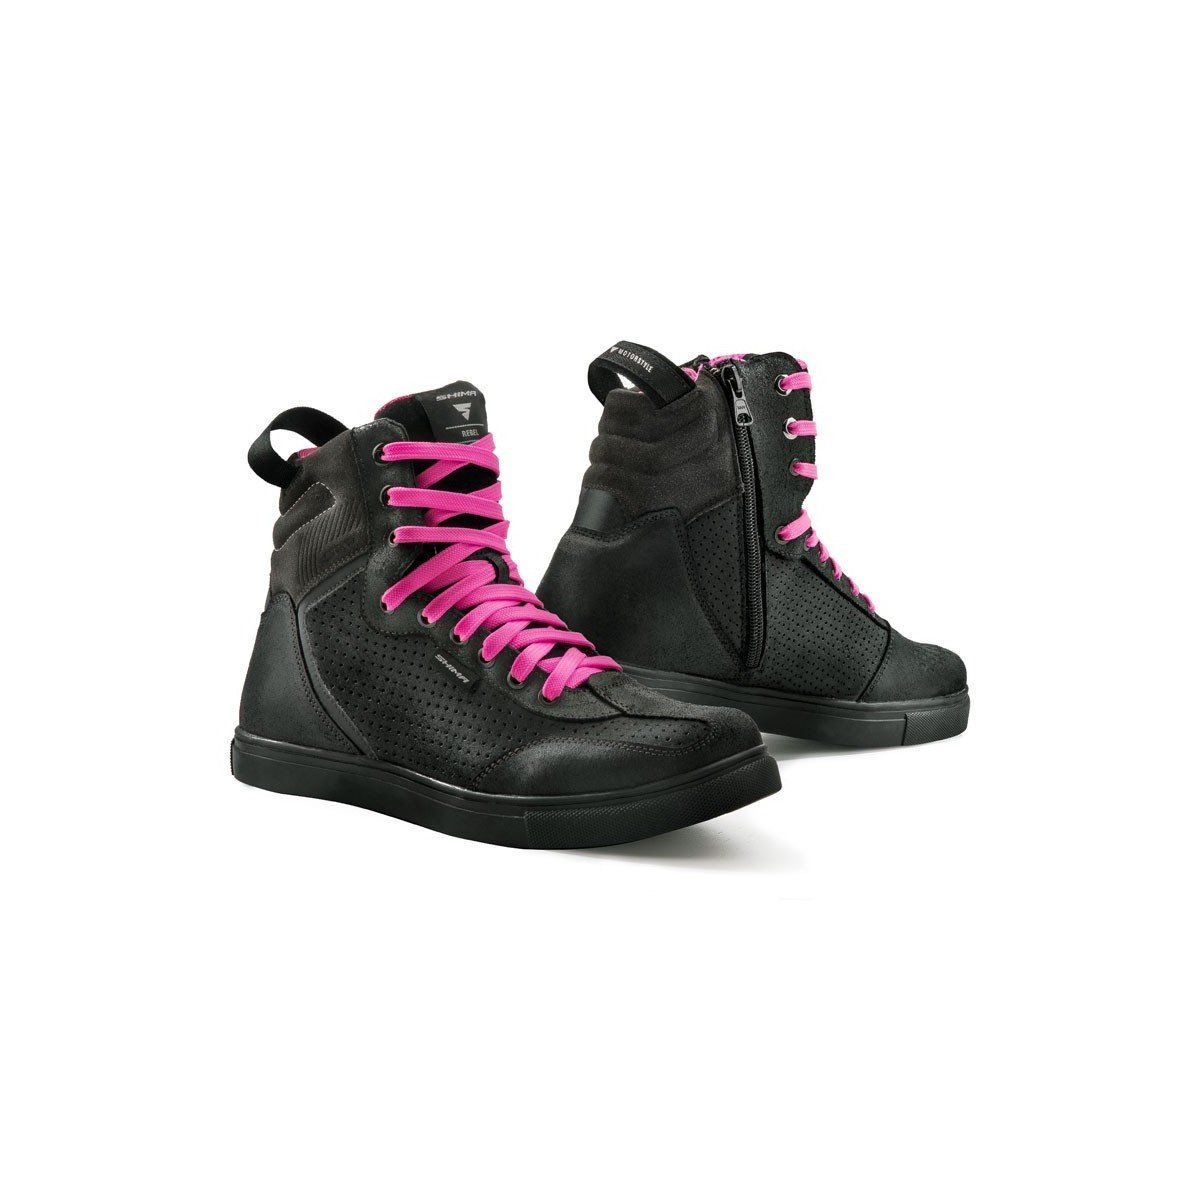 SHIMA Rebel Lady, buty motocyklowe miejskie damskie buty motocyklowe trampki Fluo czarne (36-40, czarne), rozmiar 40